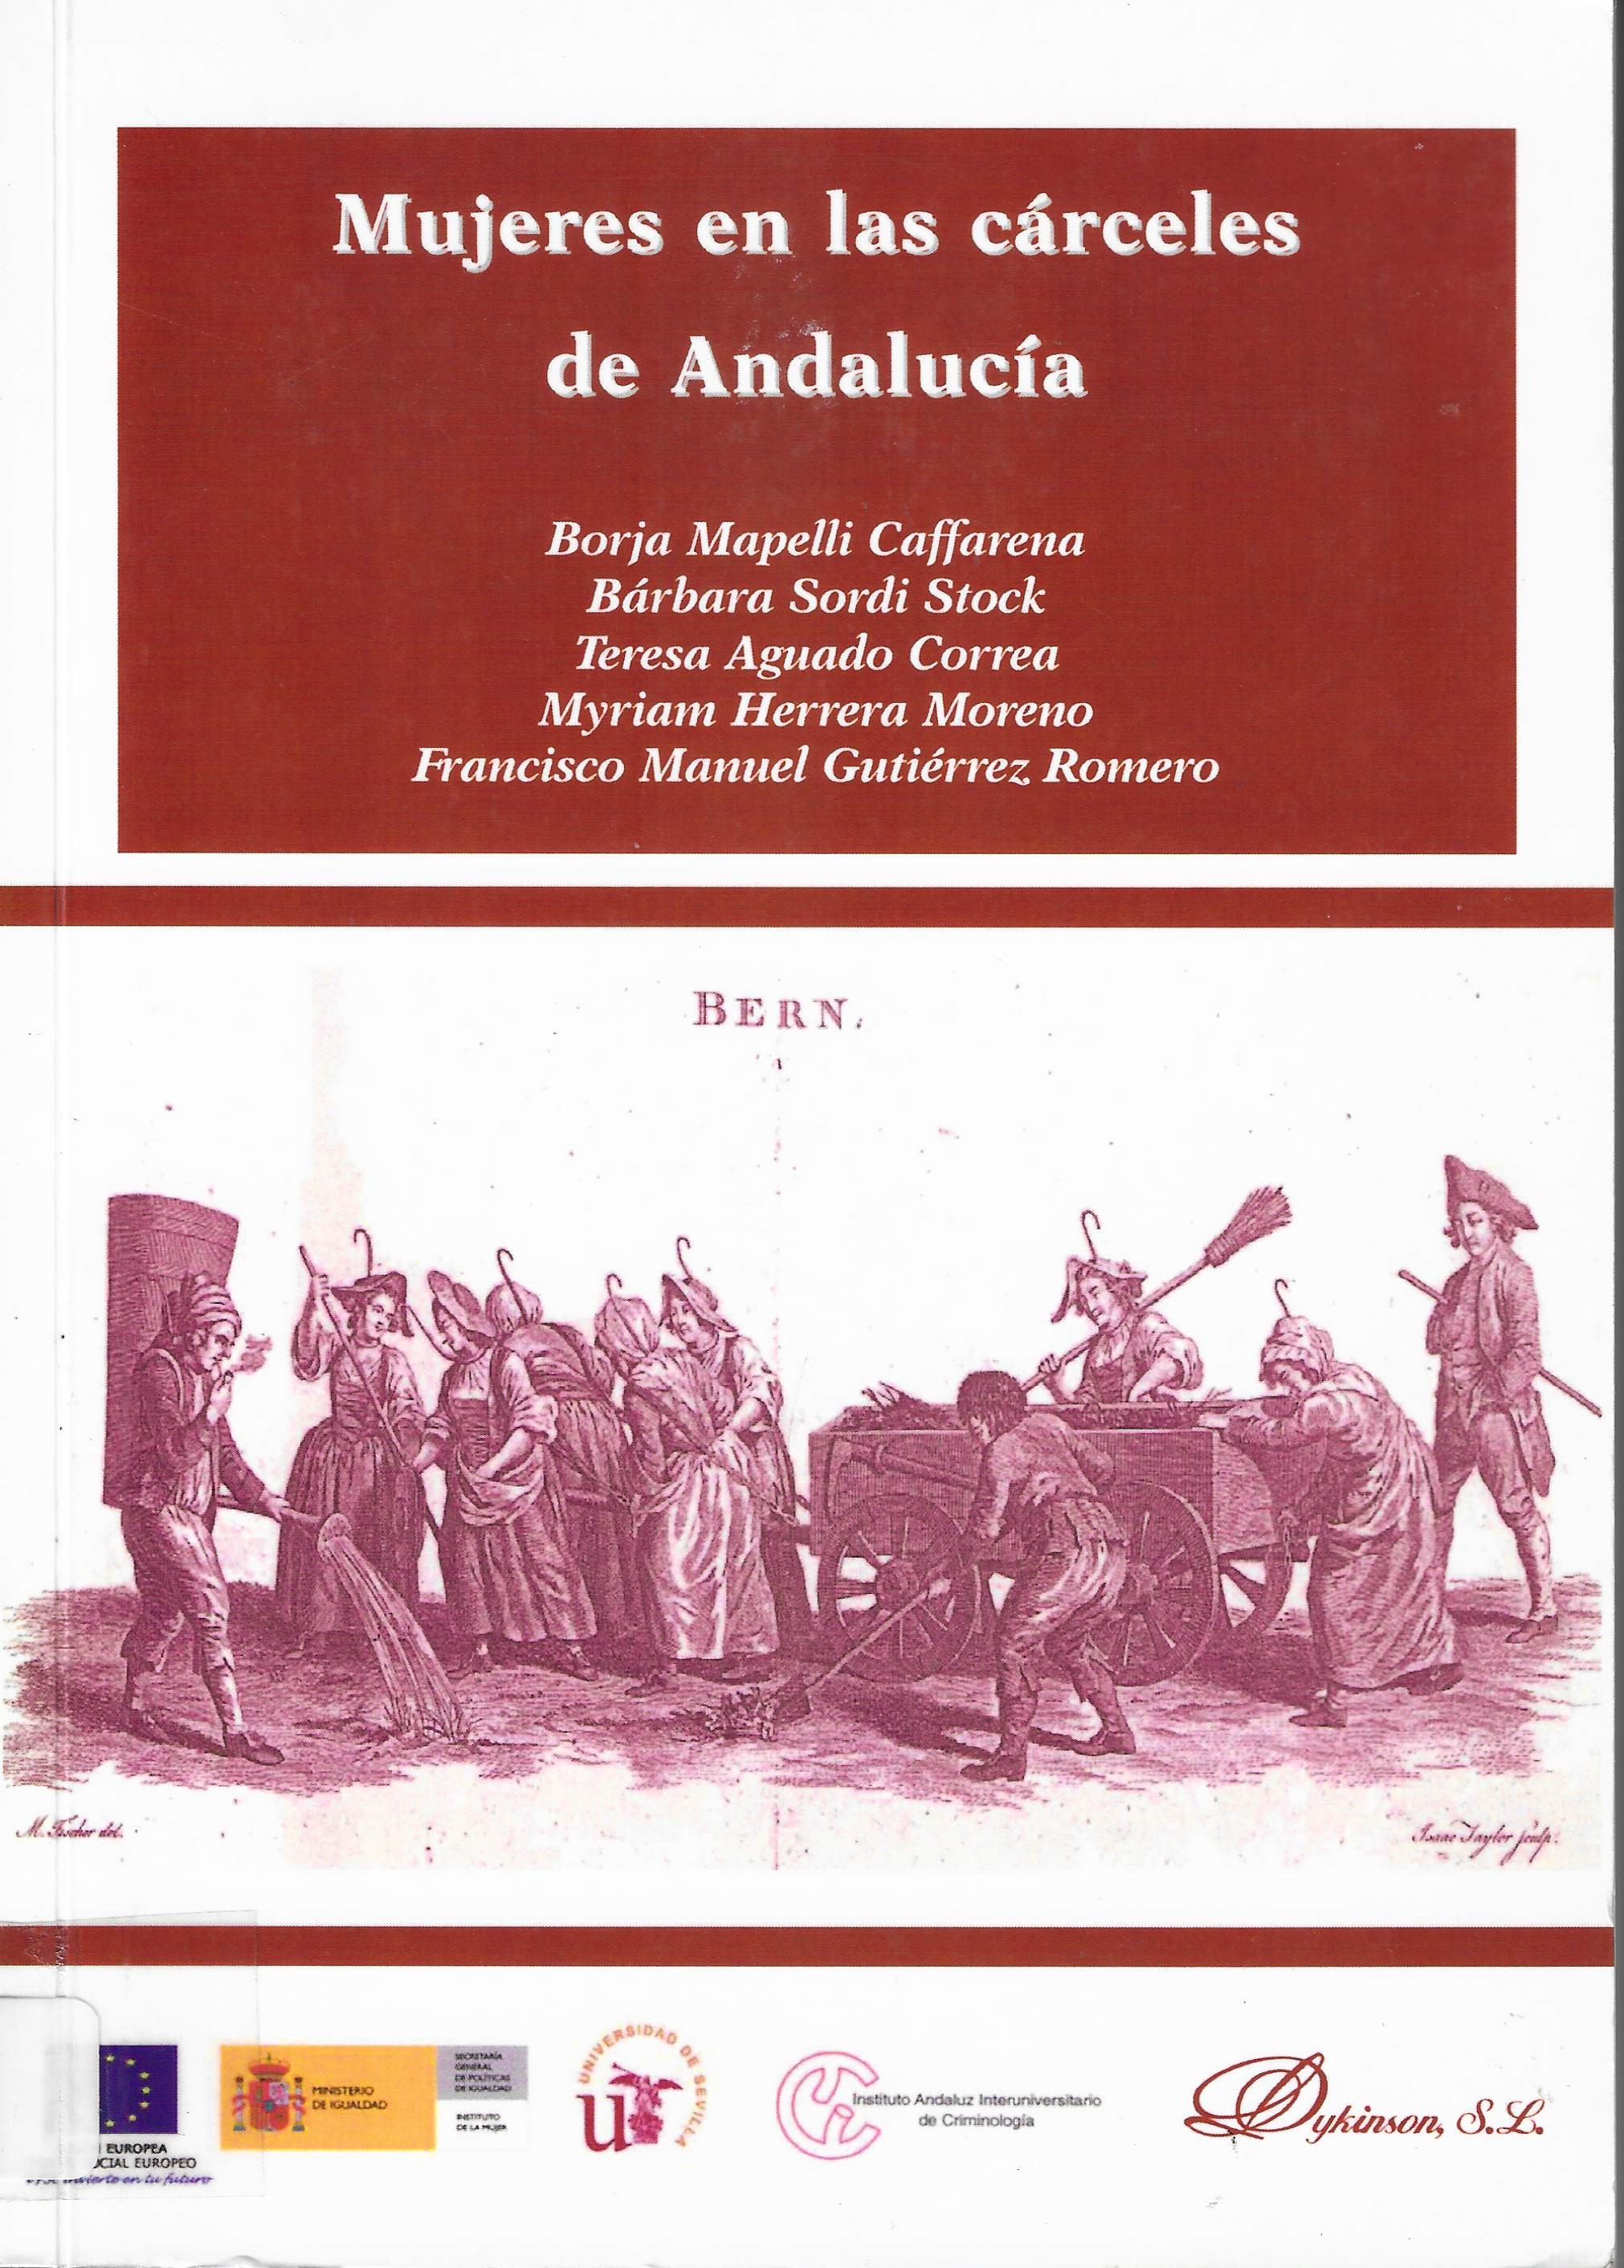 Imagen de portada del libro Mujeres en las cárceles de Andalucía